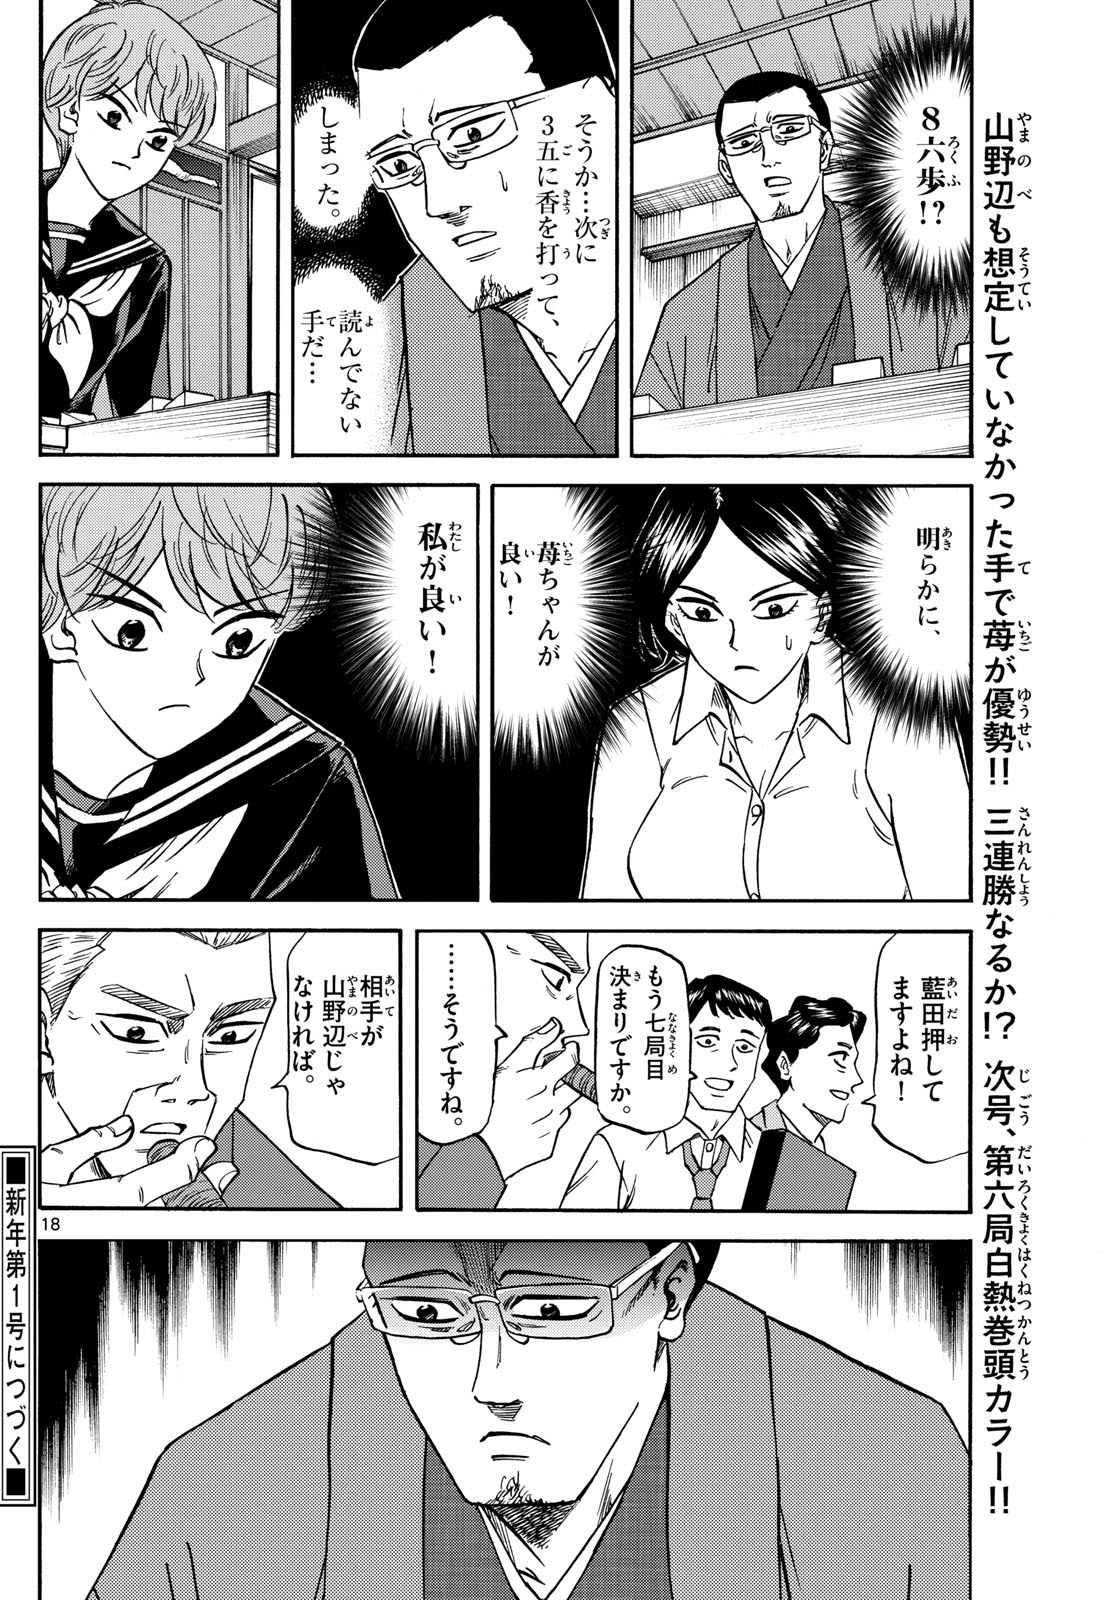 Tatsu to Ichigo - Chapter 169 - Page 18